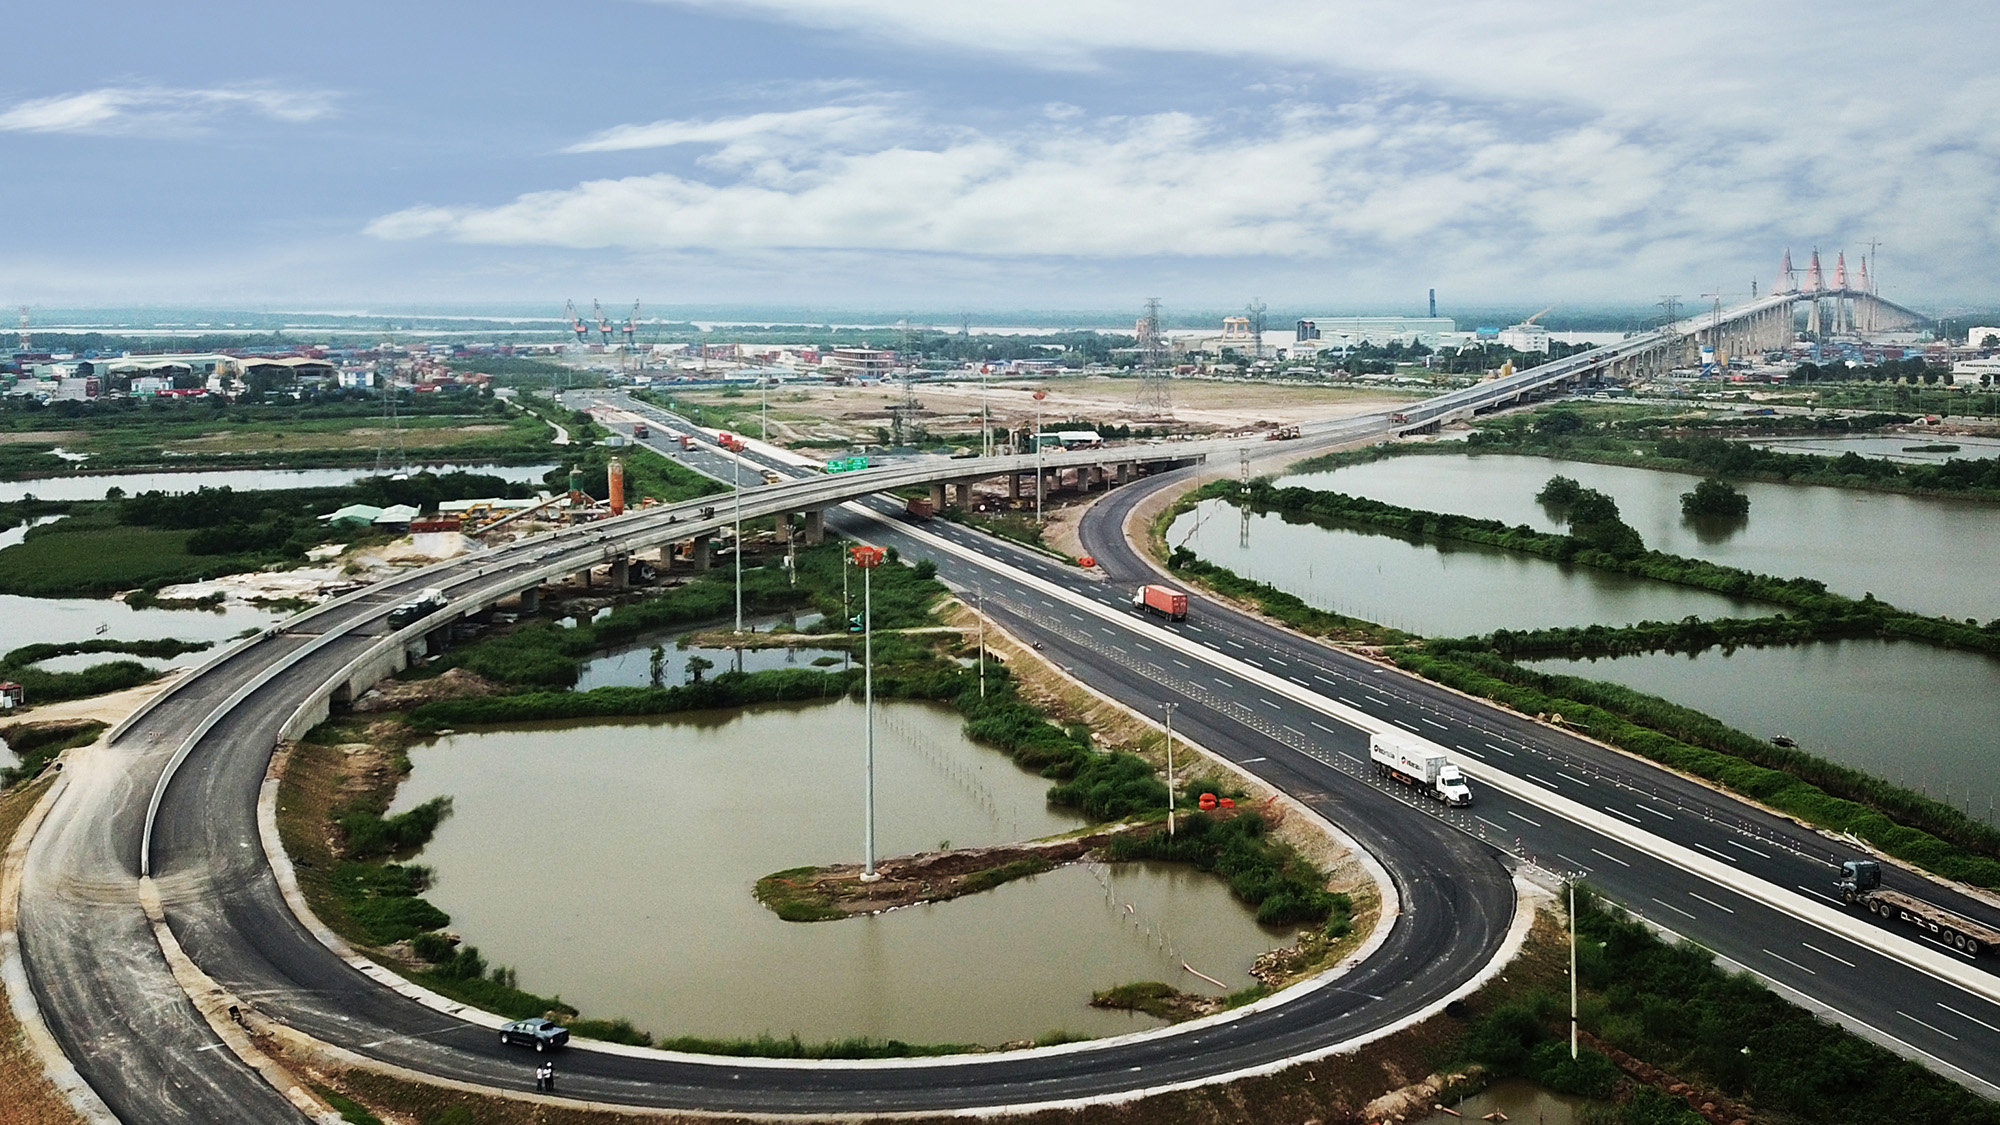 Cao tốc Hạ Long – Hải Phòng là tuyến cao tốc đầu tiên của tỉnh. Dự án đường dài 24,6km, rộng 25m được thiết kế 4 làn xe, vận tốc tối đa 100km/h.